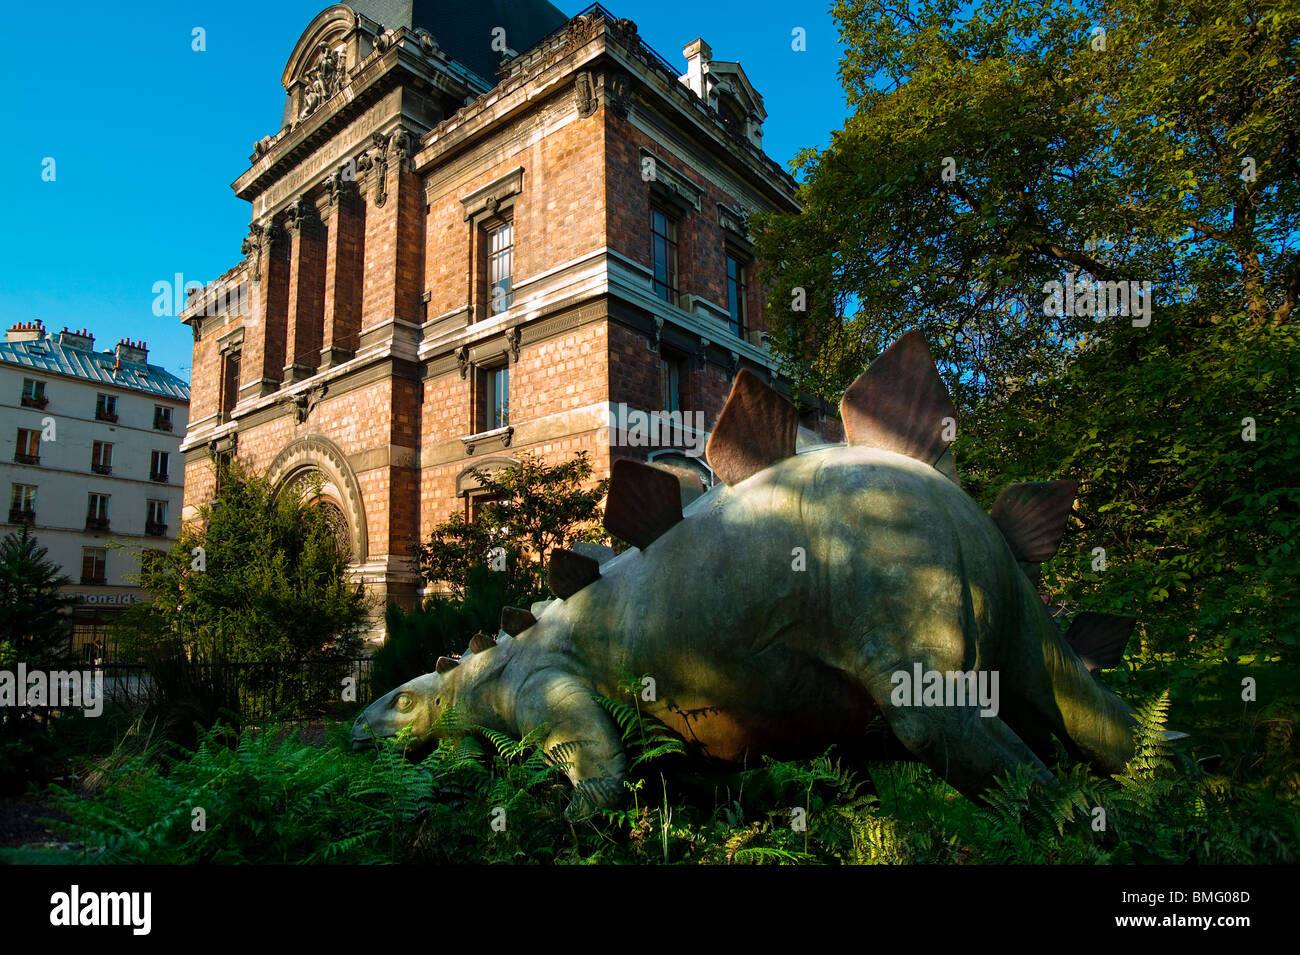 PALEONTOLOGY MUSEUM, JARDIN DES PLANTES, PARIS, FRANCE Stock Photo